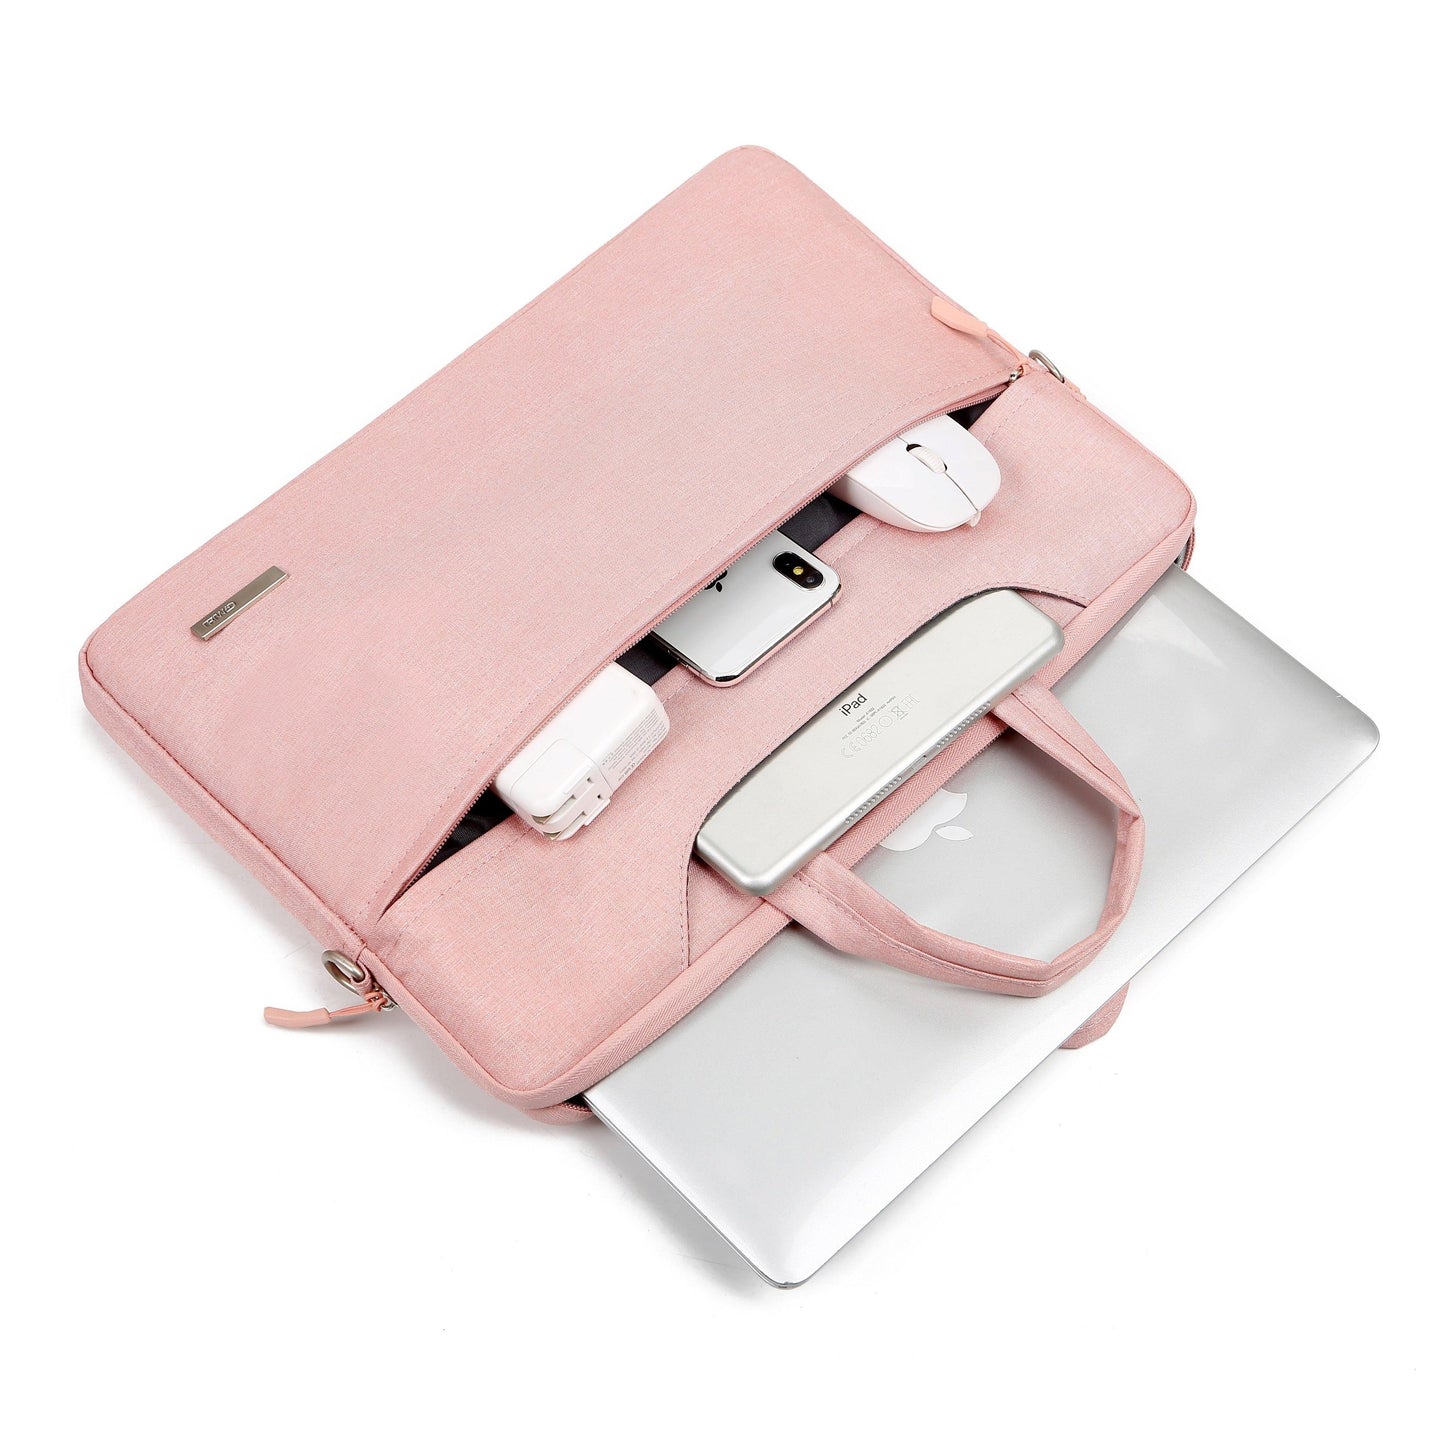 Laptop Notebook Sleeve Shoulder Bag 12 13.3 15.6 14 inch Universal Case For MacBook - i-Phonecases.com